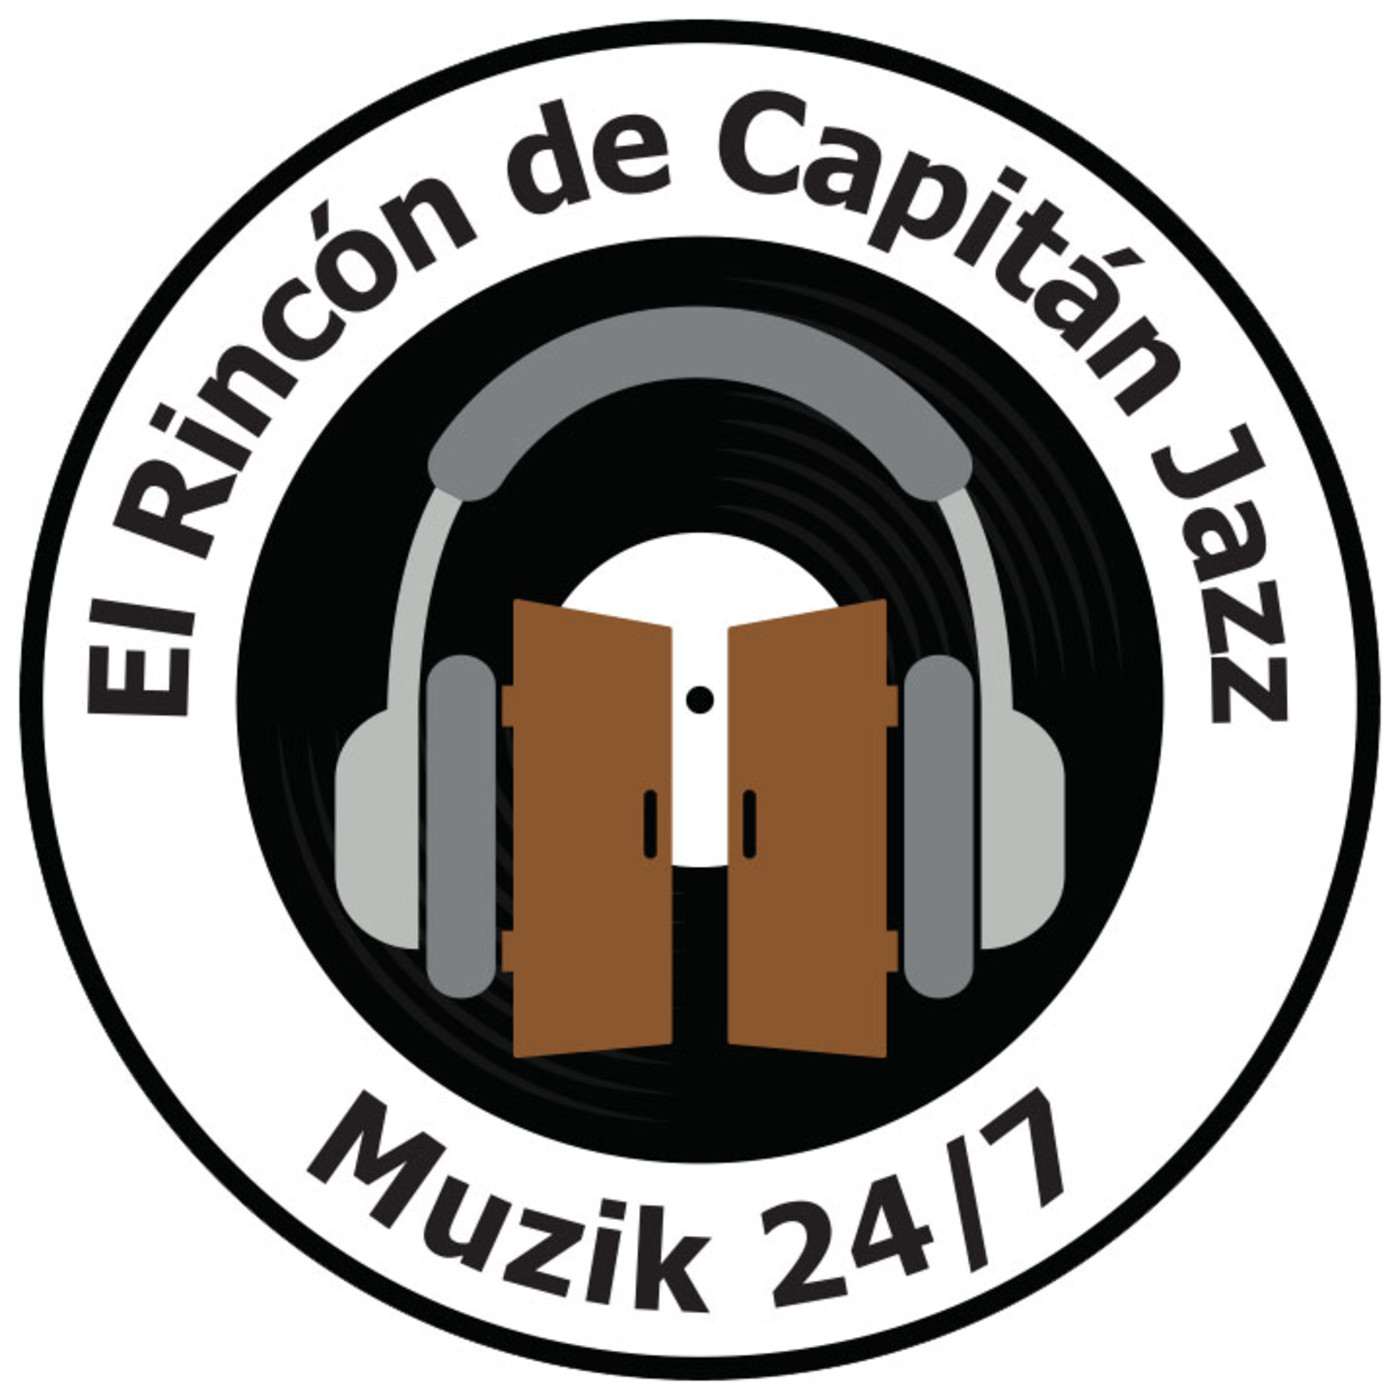 El Rincón de Capitán Jazz 242